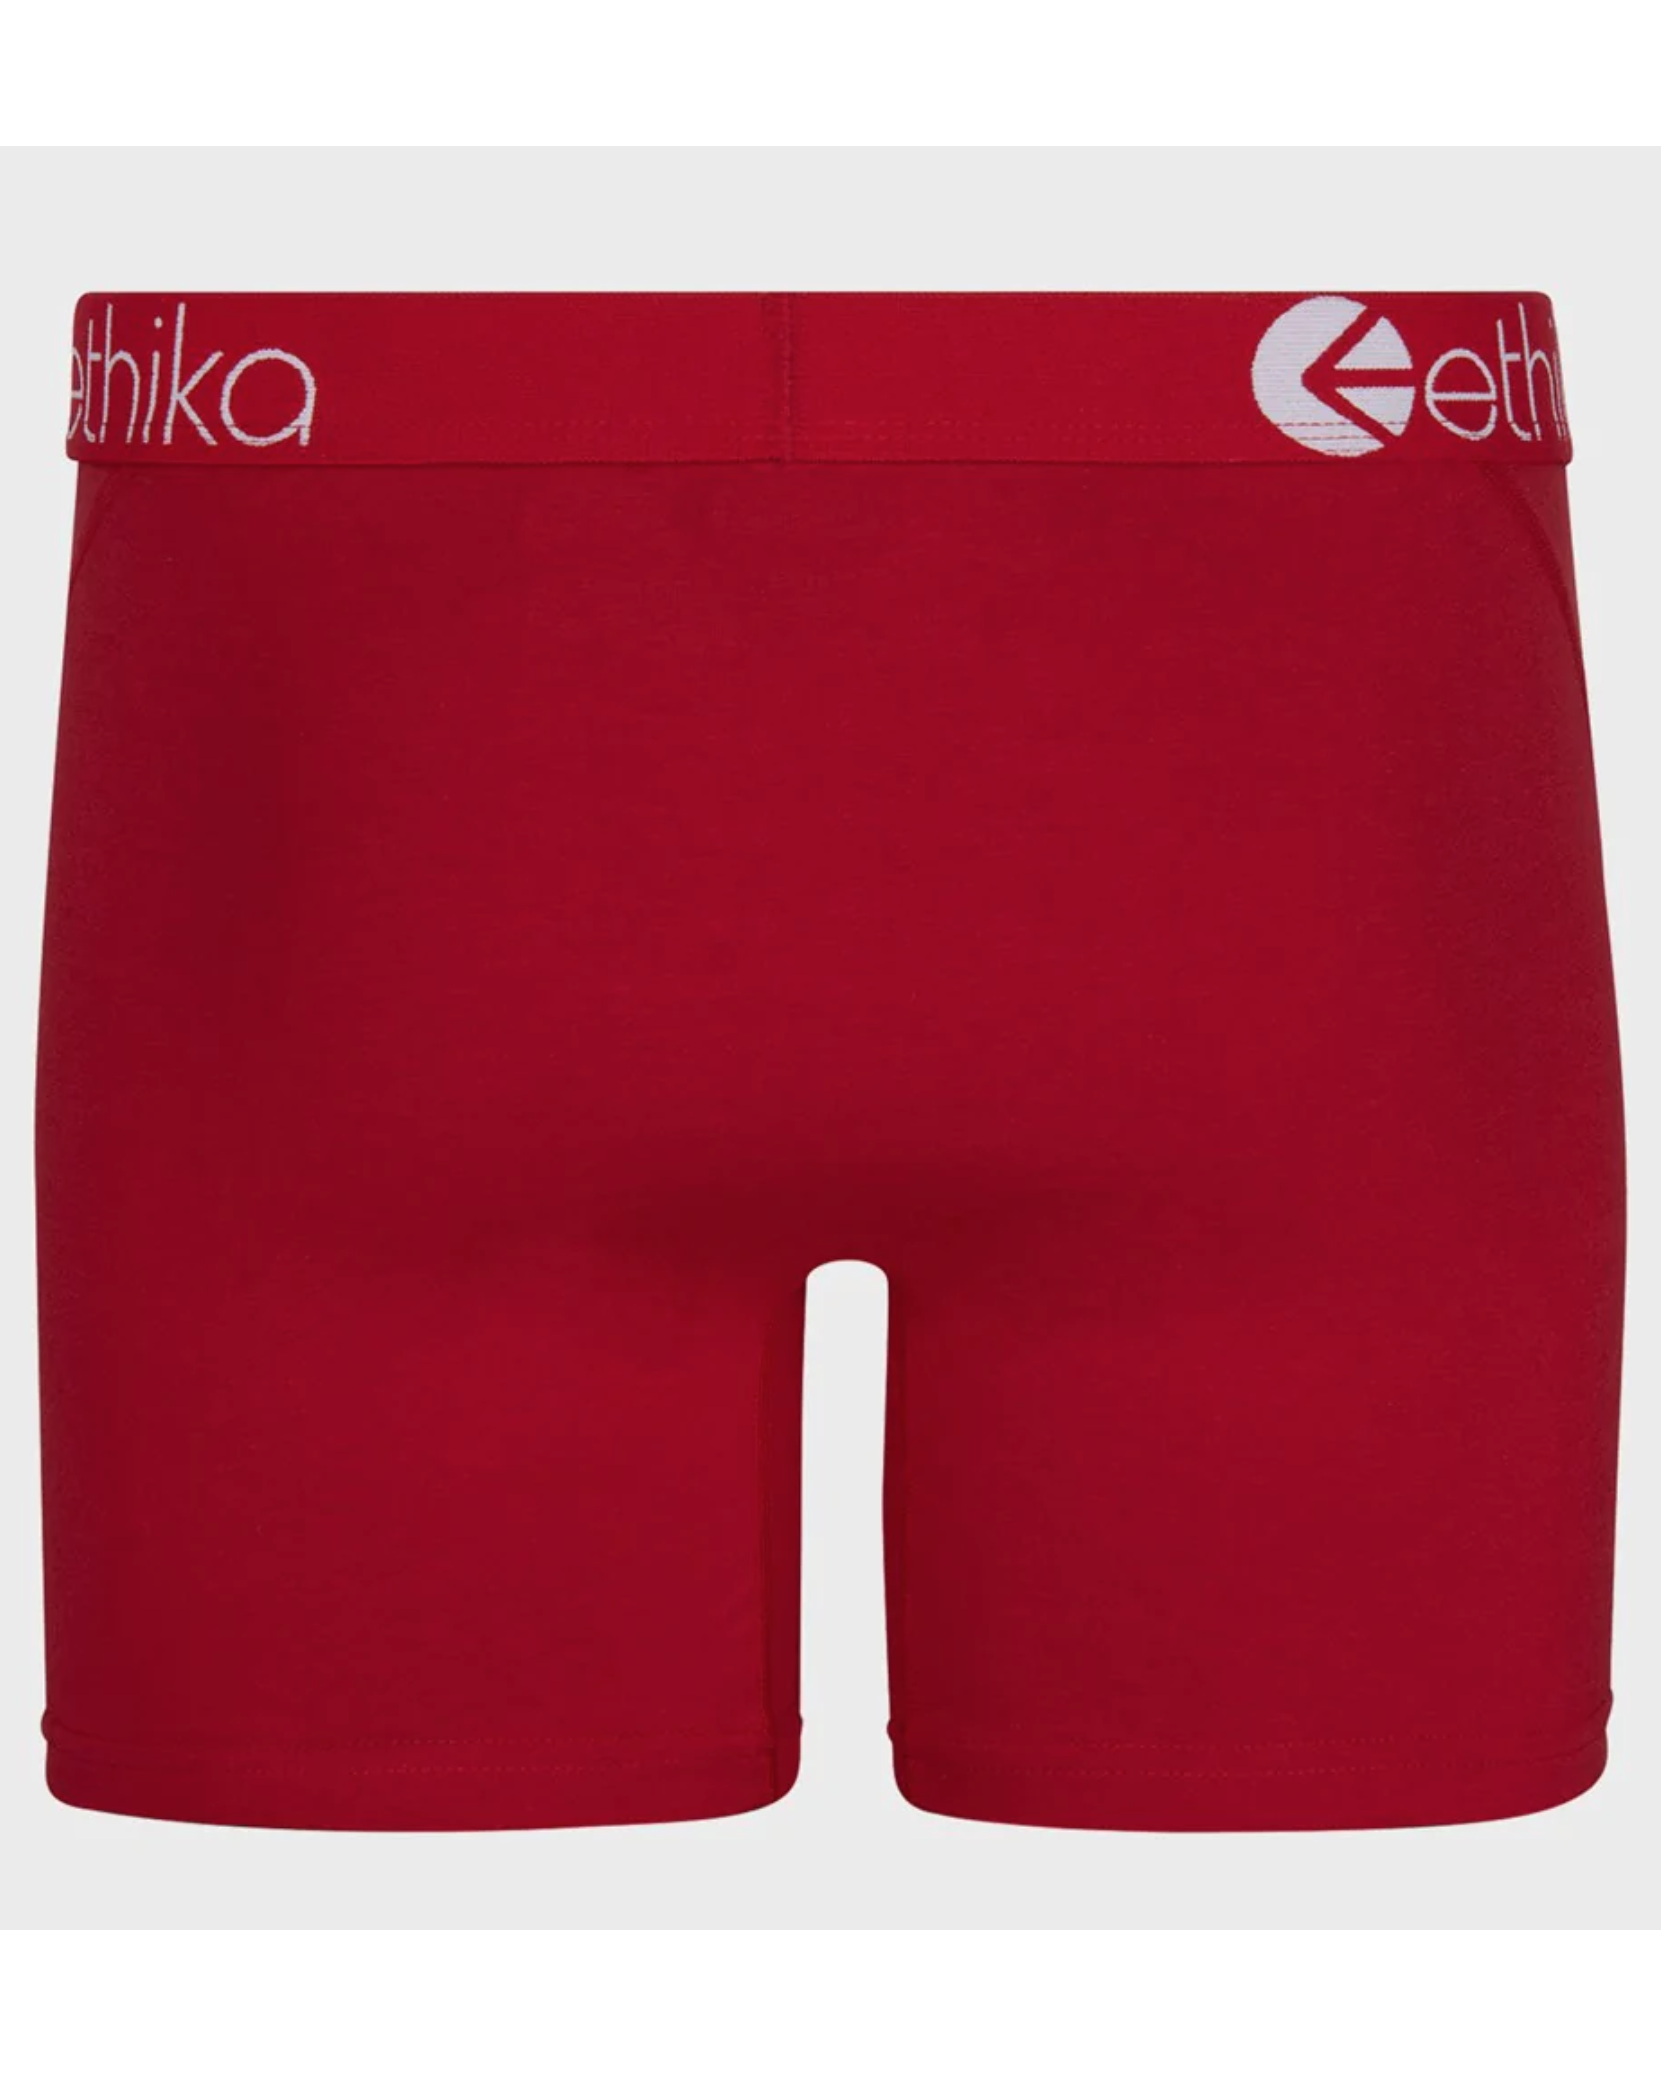 Ethika Mens Cayenne Red Mid Staple Underwear